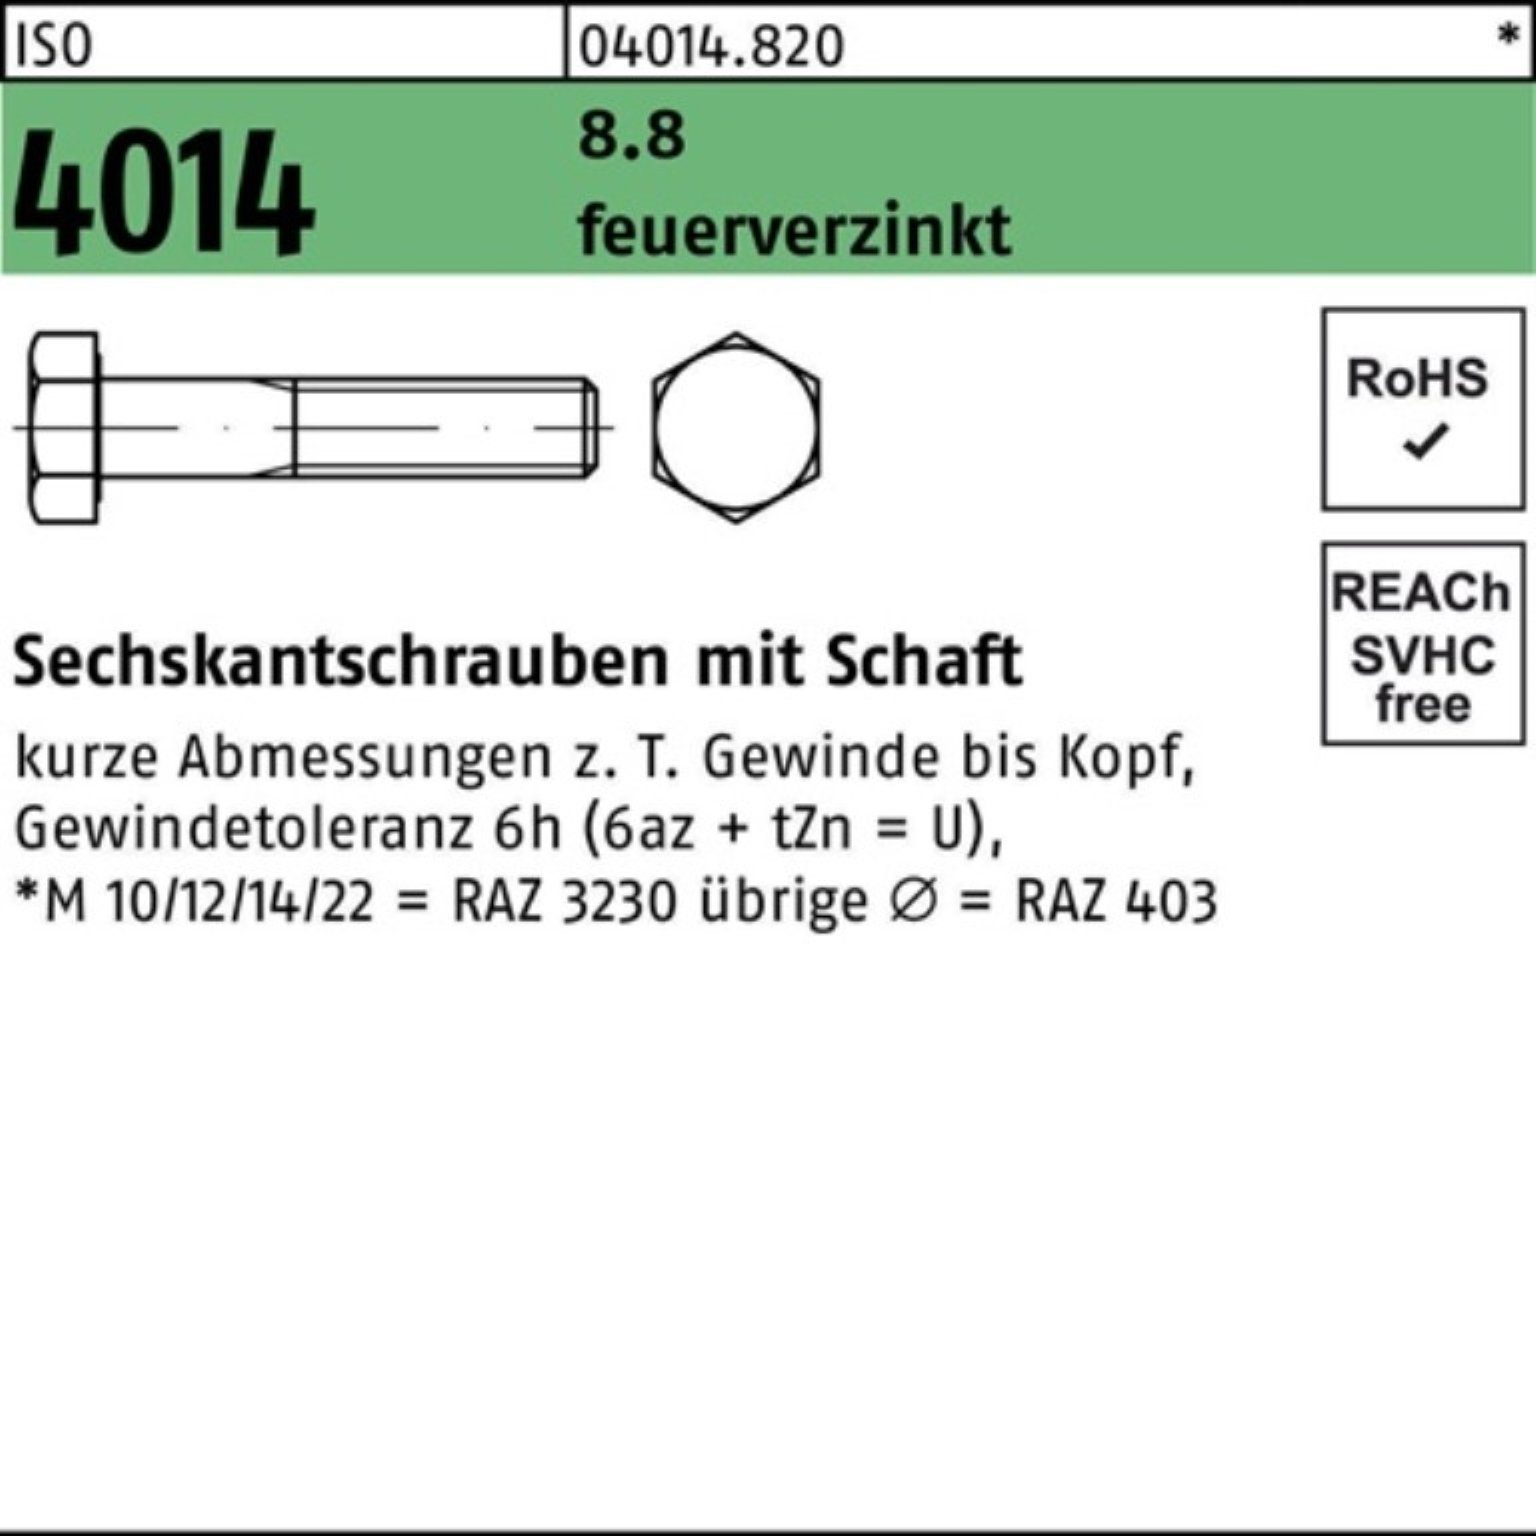 Bufab Sechskantschraube 100er Pack Sechskantschraube ISO 4014 Schaft M20x 120 8.8 feuerverz. 2